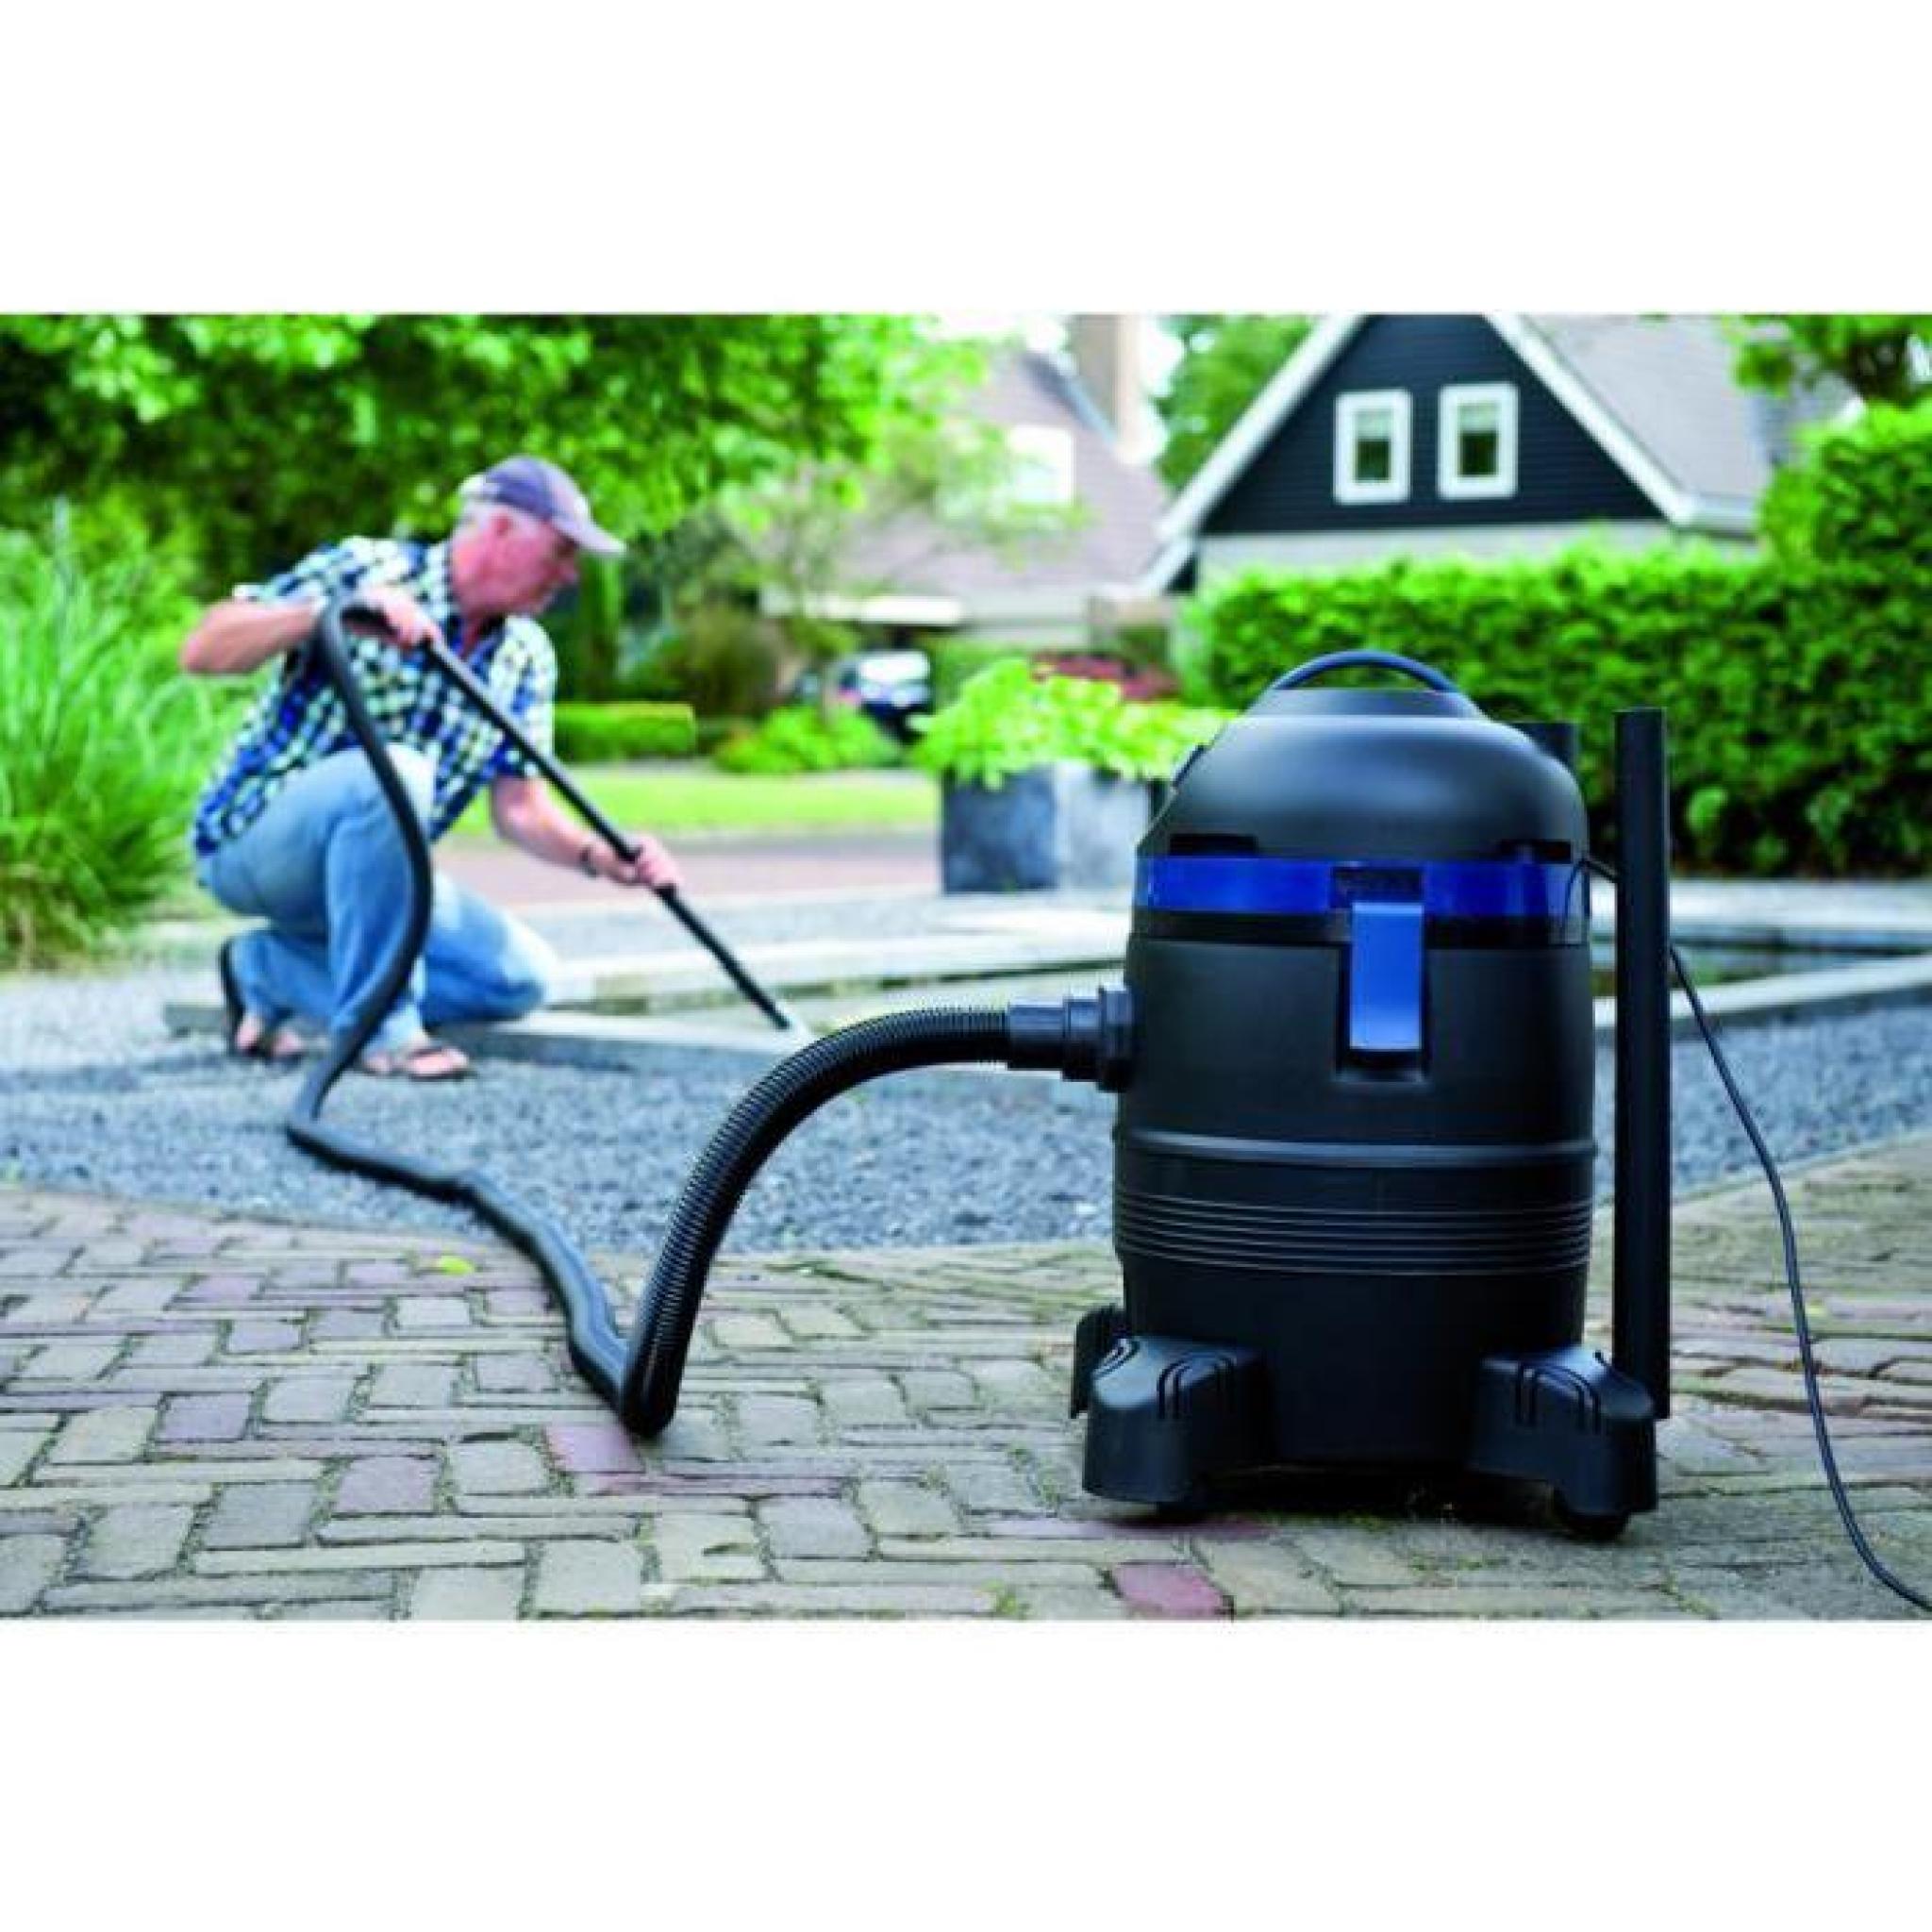 Cet aspirateur est conçu pour nettoyer les bassins de votre jardin ou les piscines. Grâce à son moteur ultra-puissant (1000 watt)... pas cher